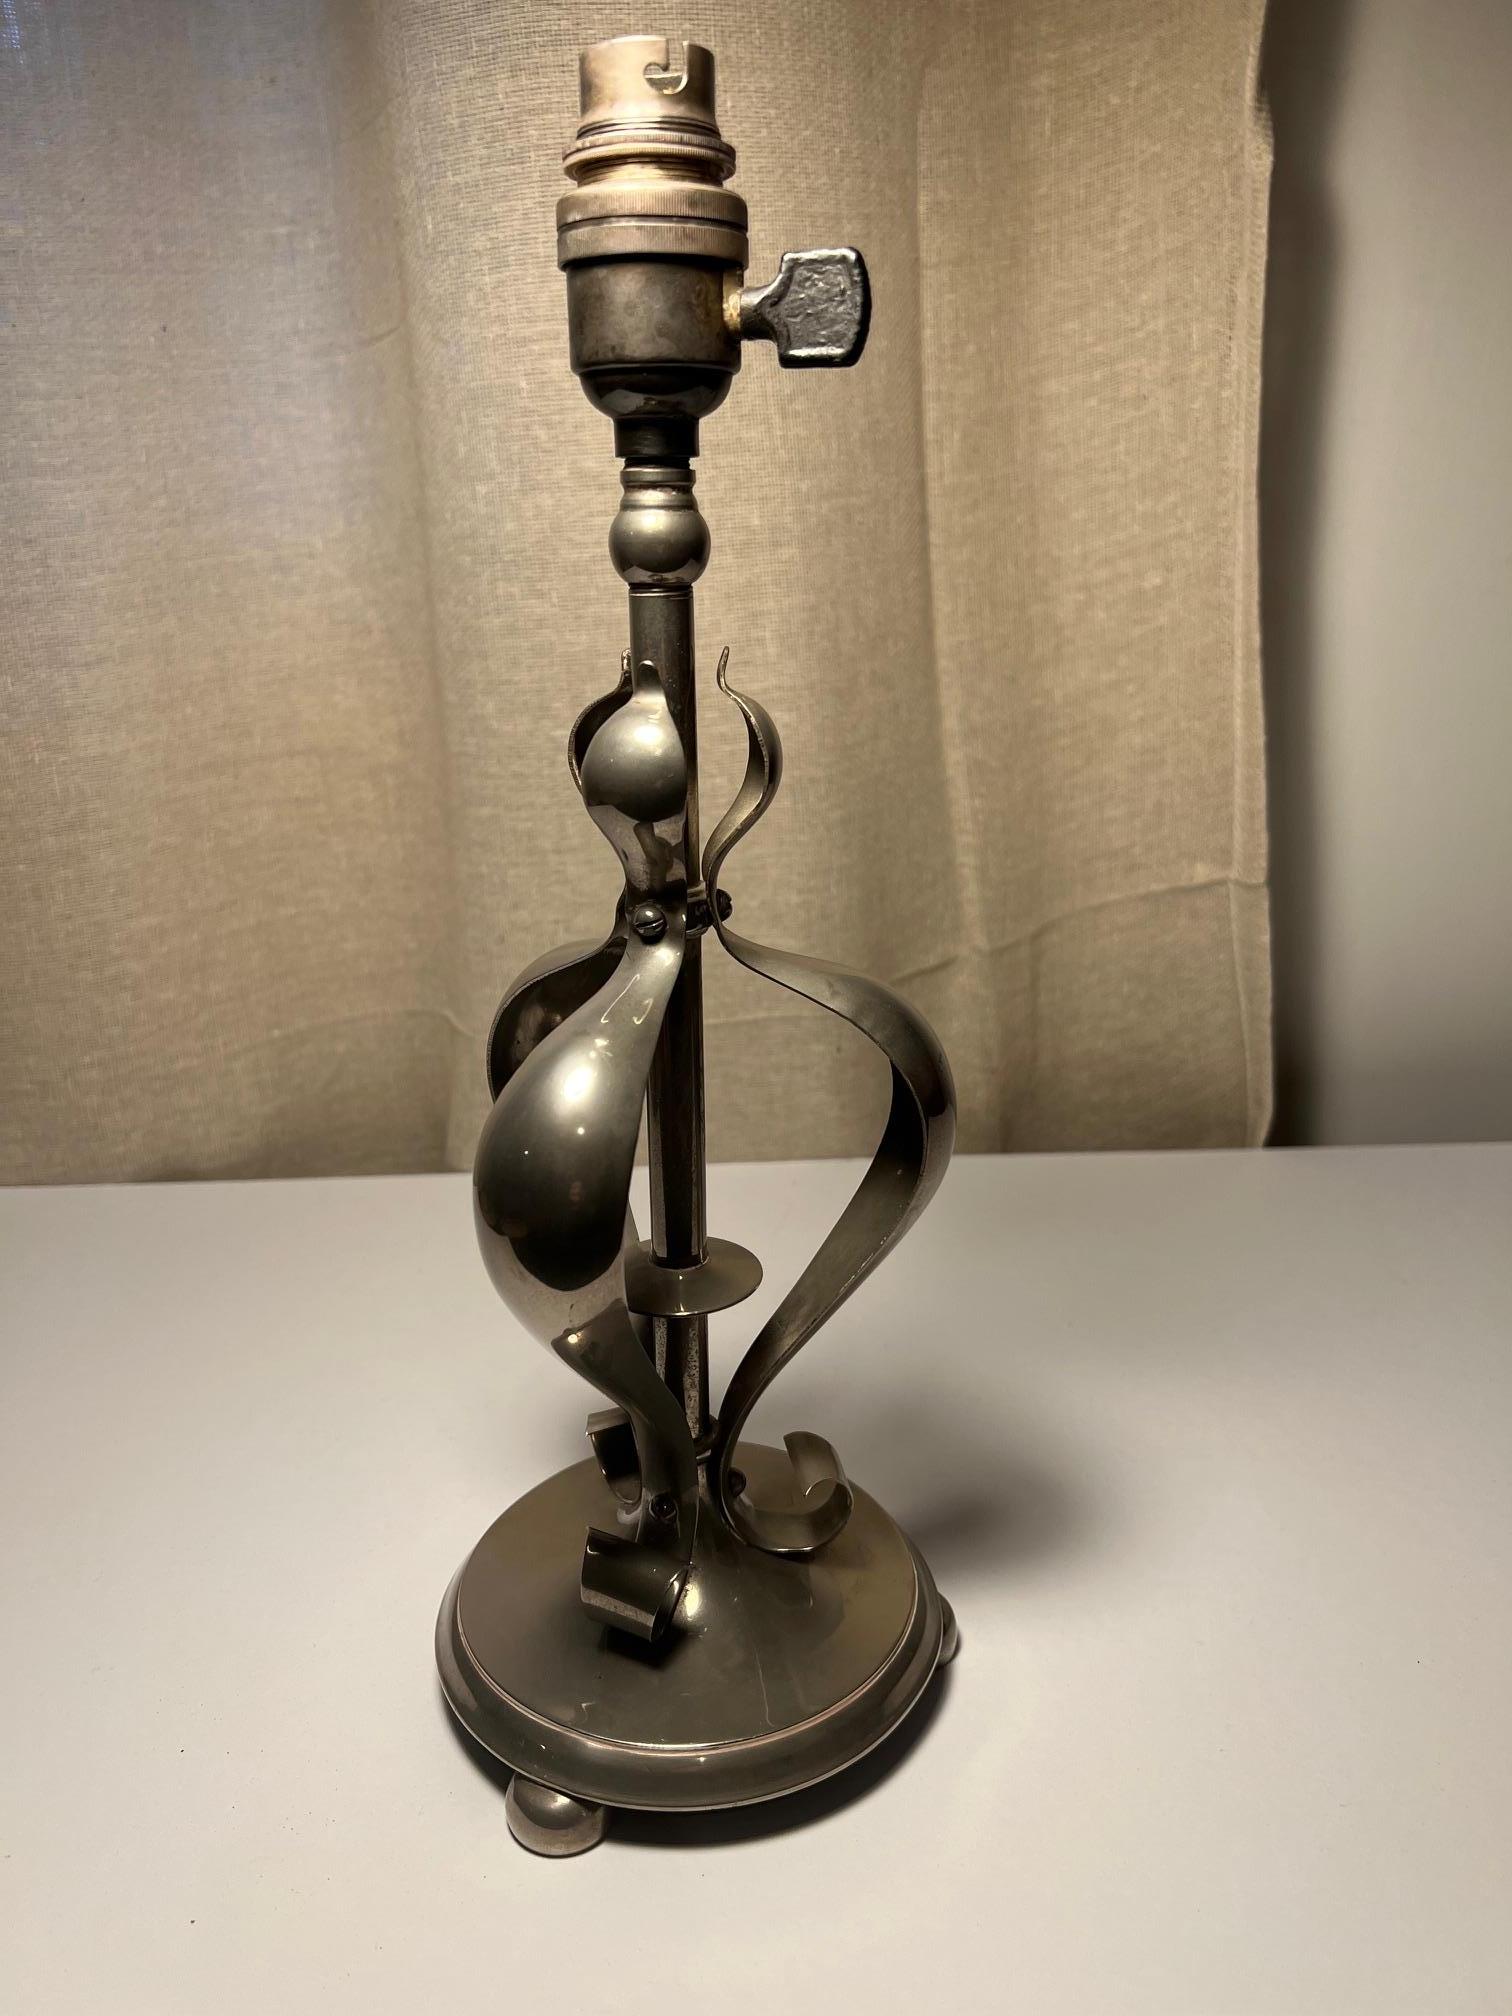 Vernickelte Messing-Tischlampe im Stil der Birmingham School of Arts and Crafts.

Könnte möglicherweise ein frühes Stück der General Electric Company sein.

Derzeit nicht verdrahtet, kann auf Anfrage mit ausstehenden Details verdrahtet werden, wird